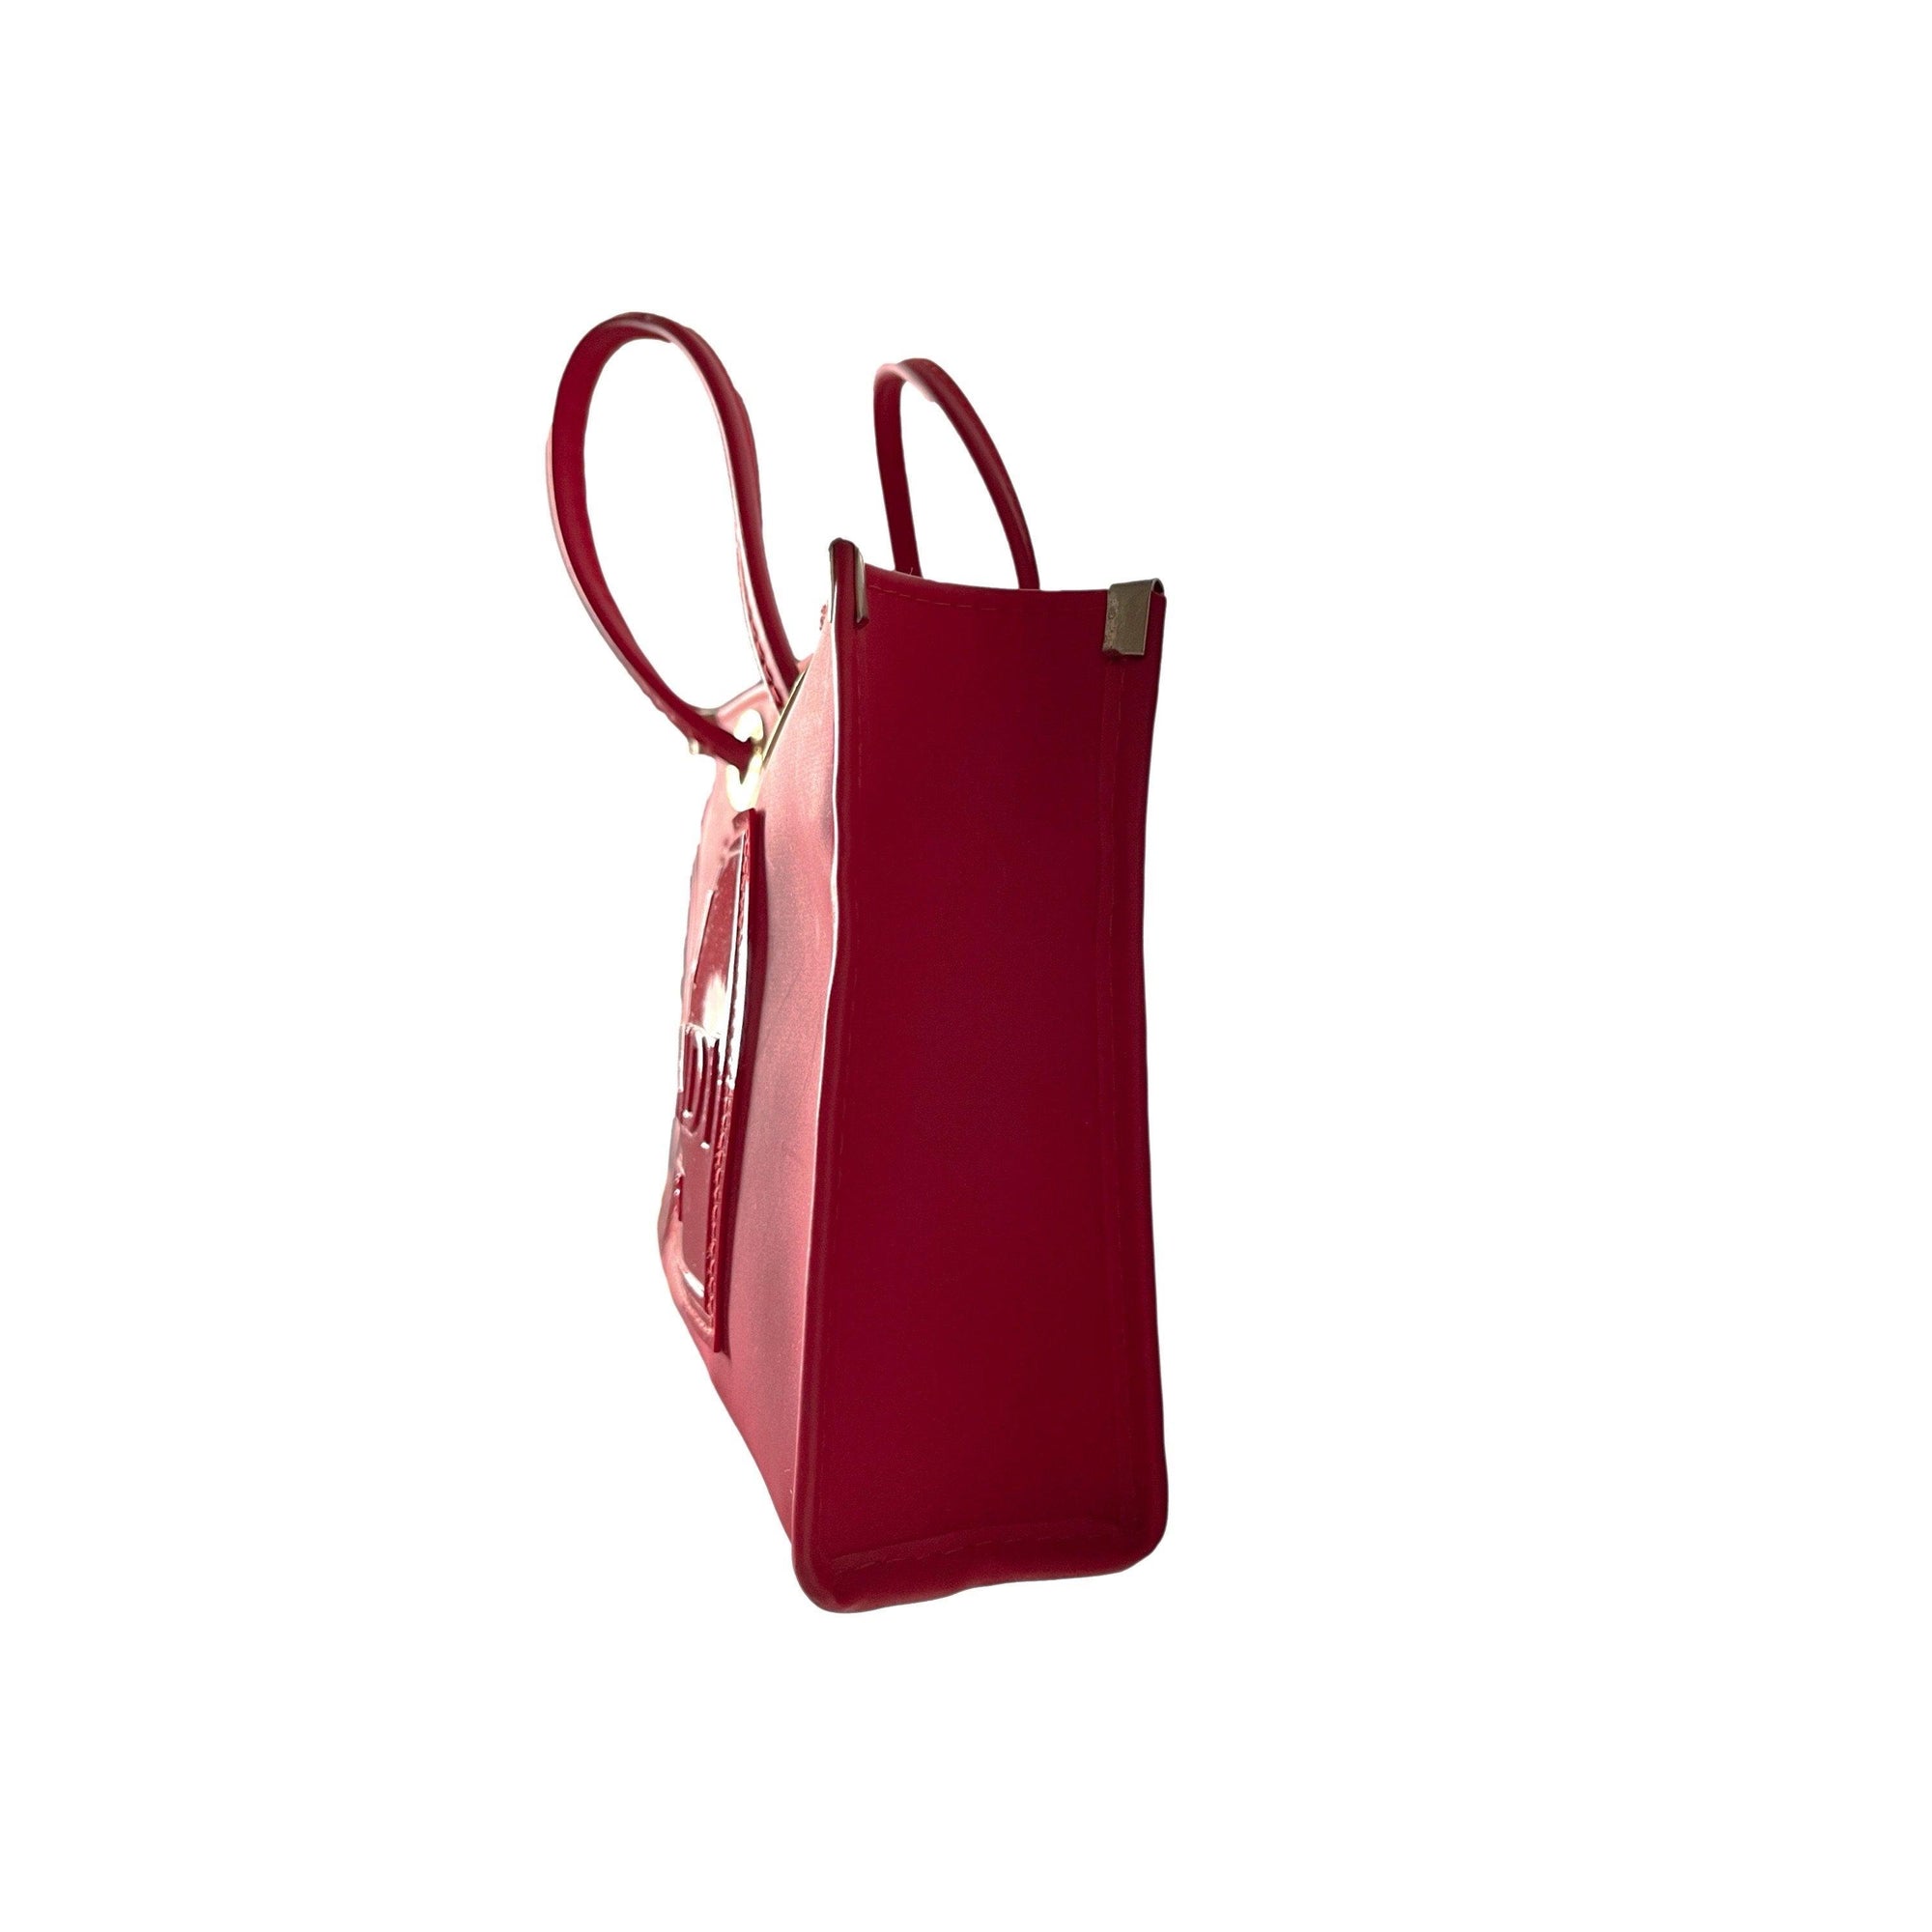 Fendi Red Micro Top Handle Bag - Handbags